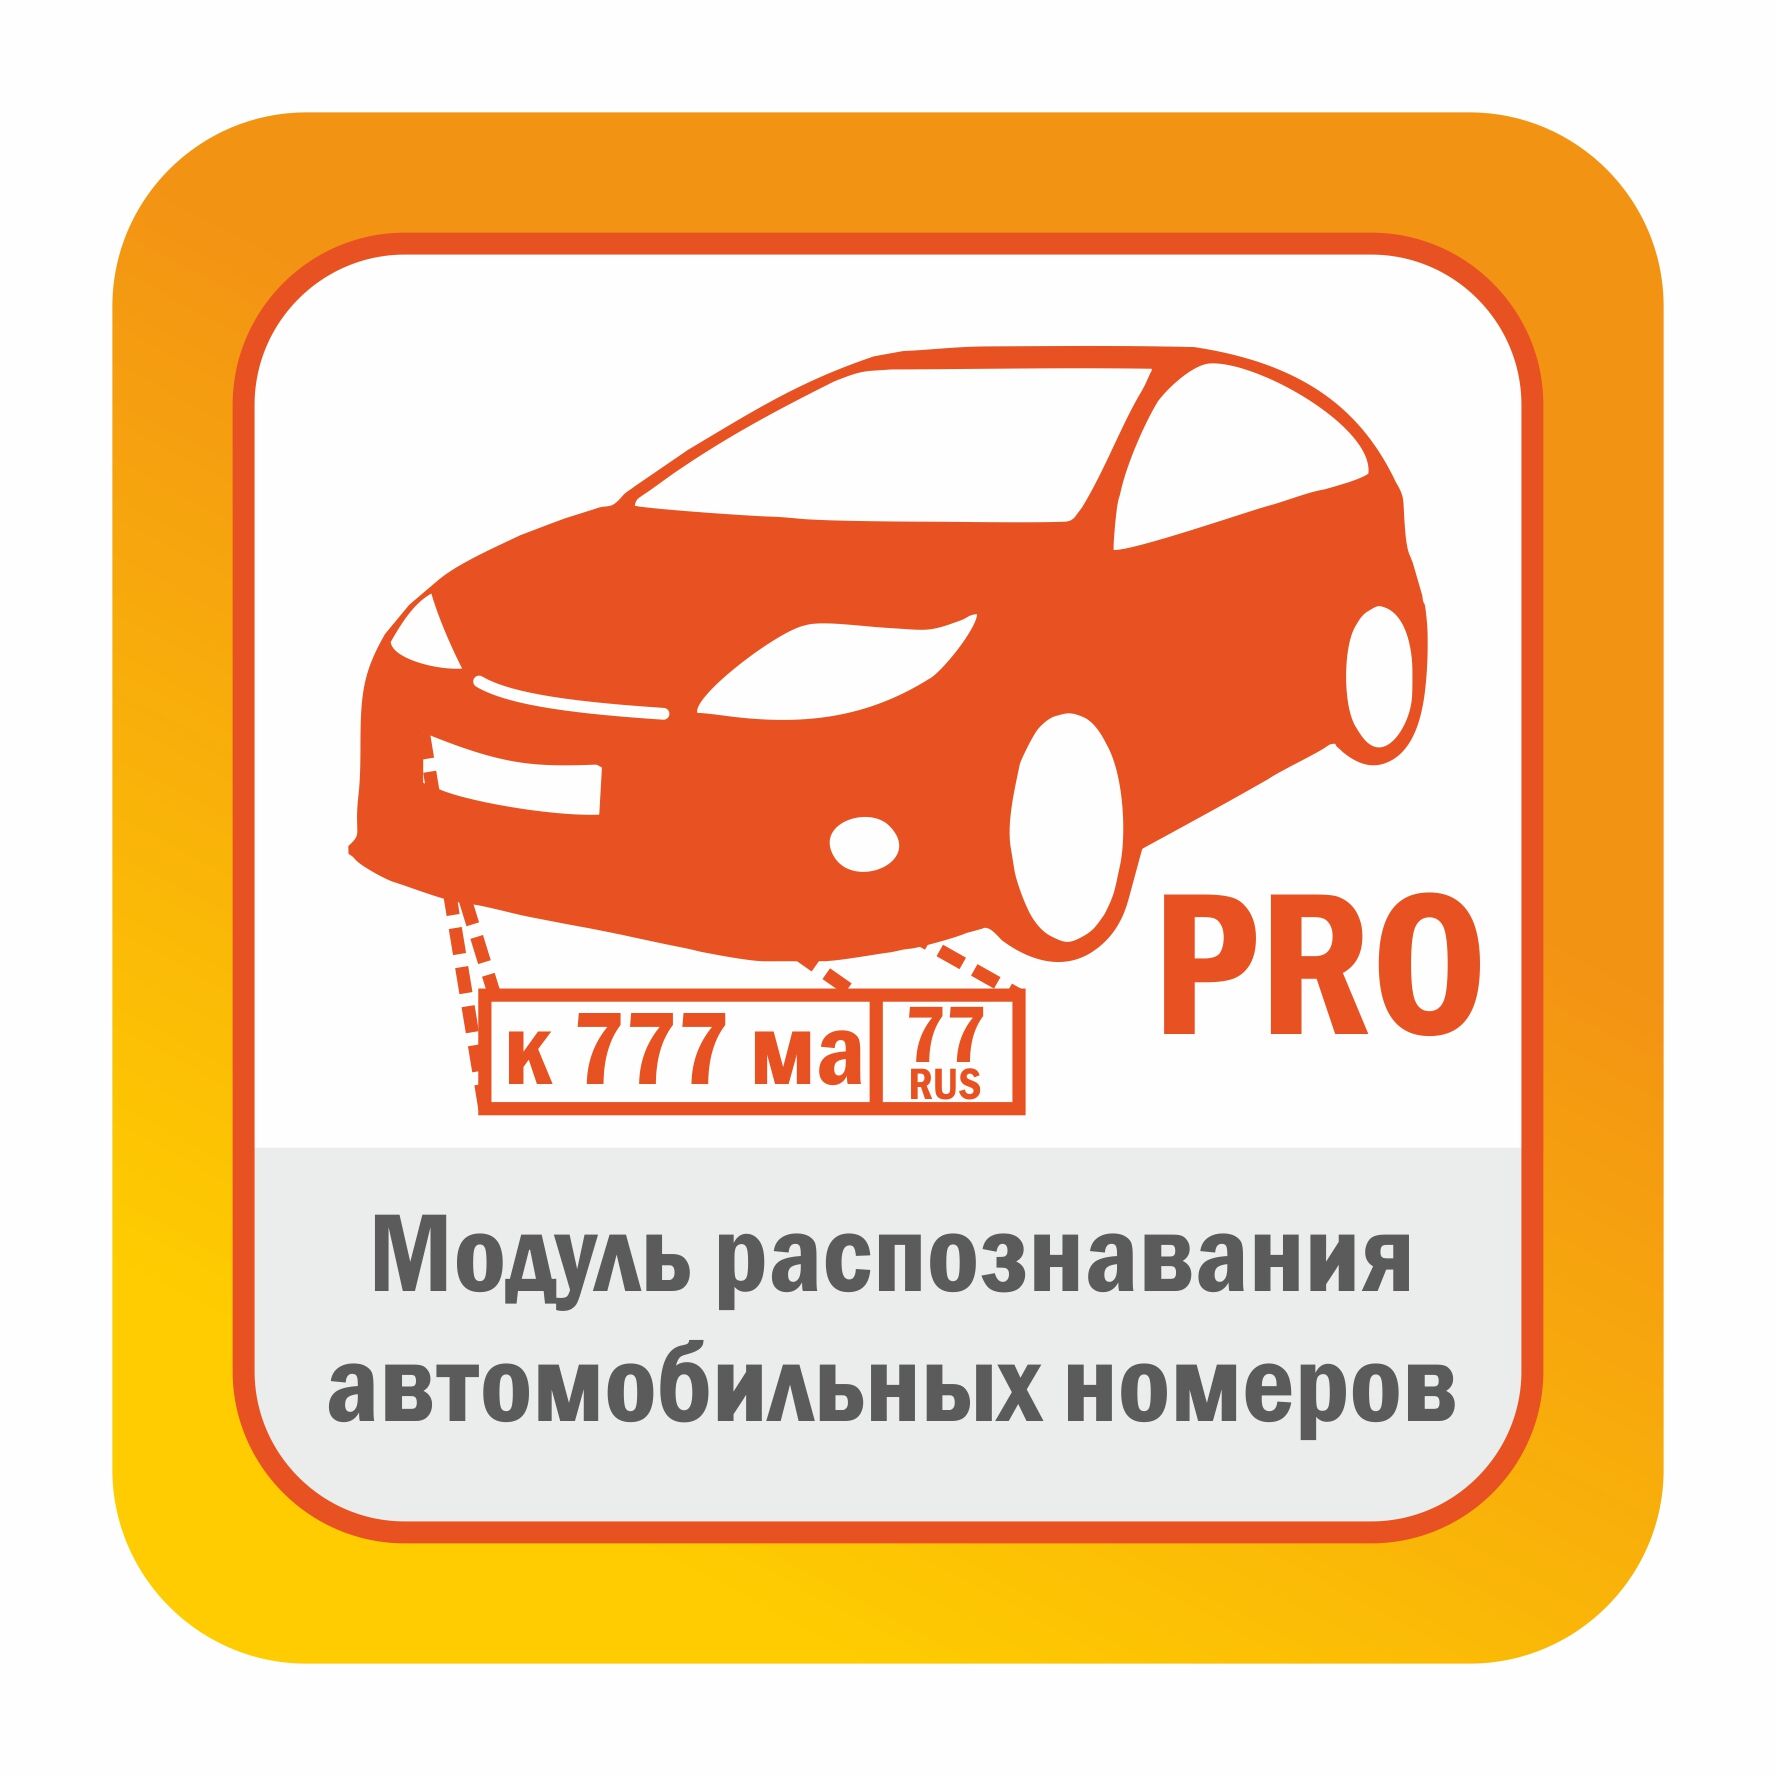 ПО для видеонаблюдения Satvision Модуль распознавания автомобильных номеров - редакция PRO до 270 км/ч